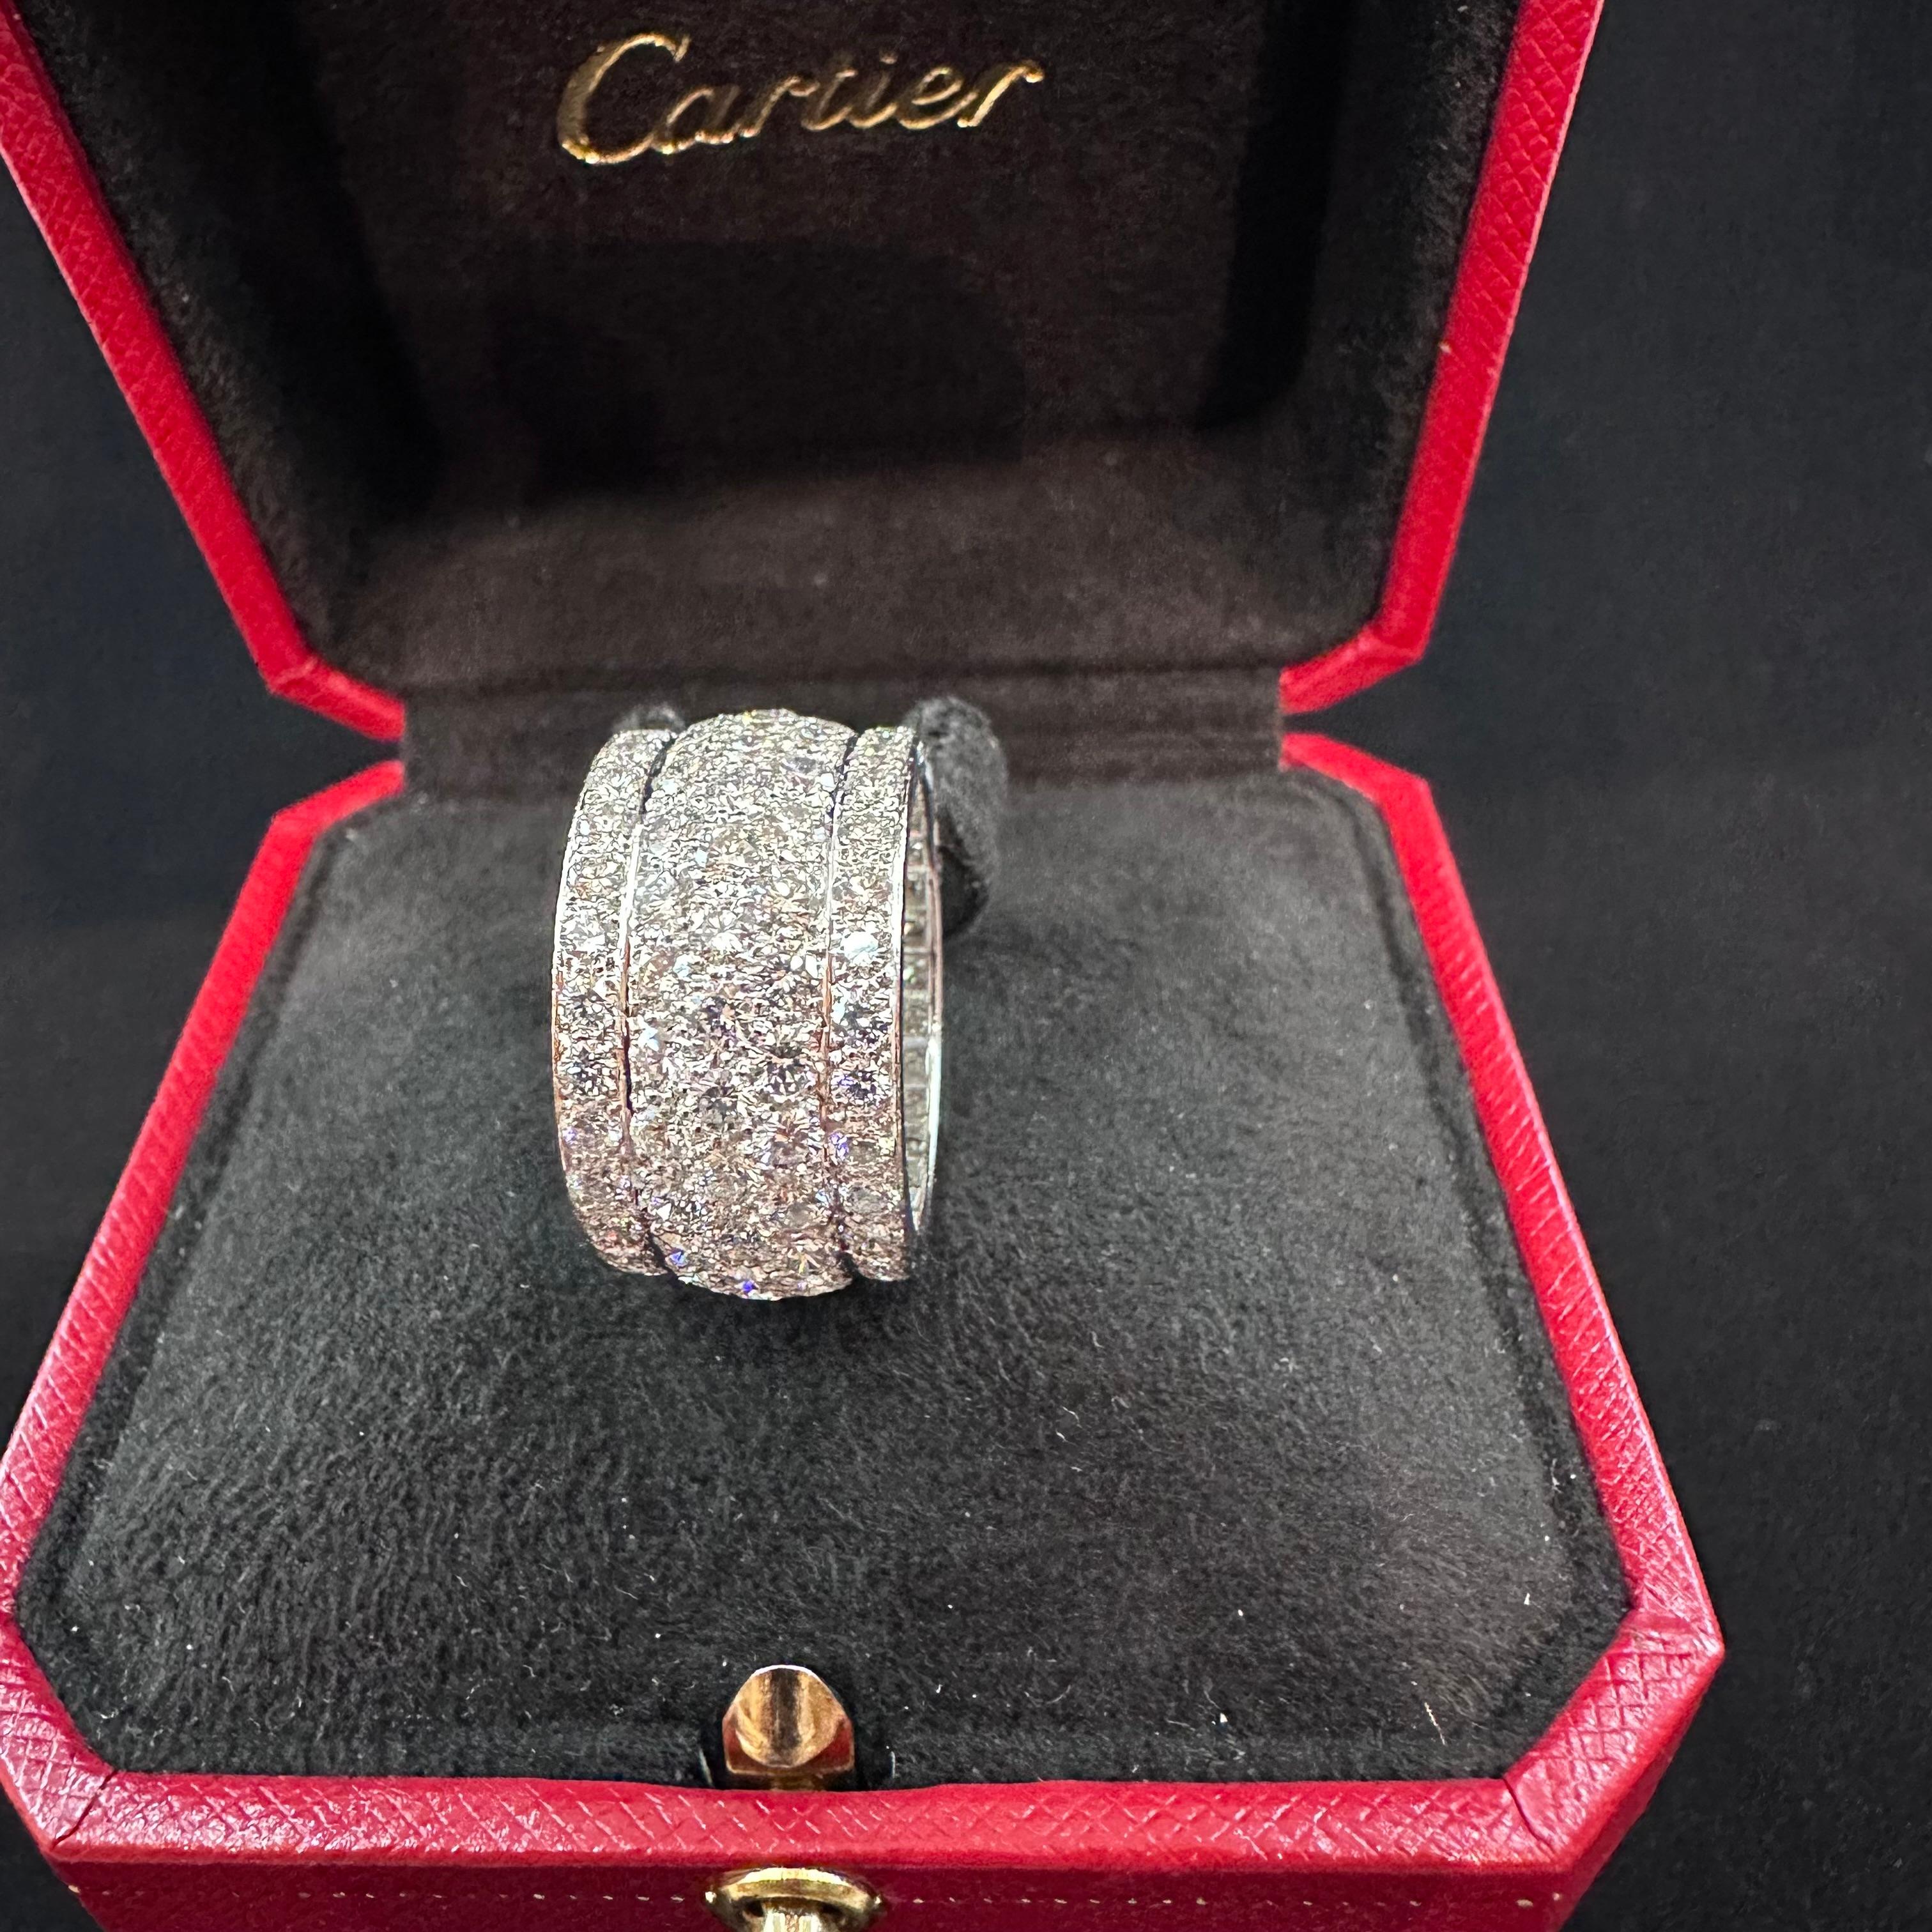 Brilliant Cut Cartier Nigeria Diamond Band  For Sale